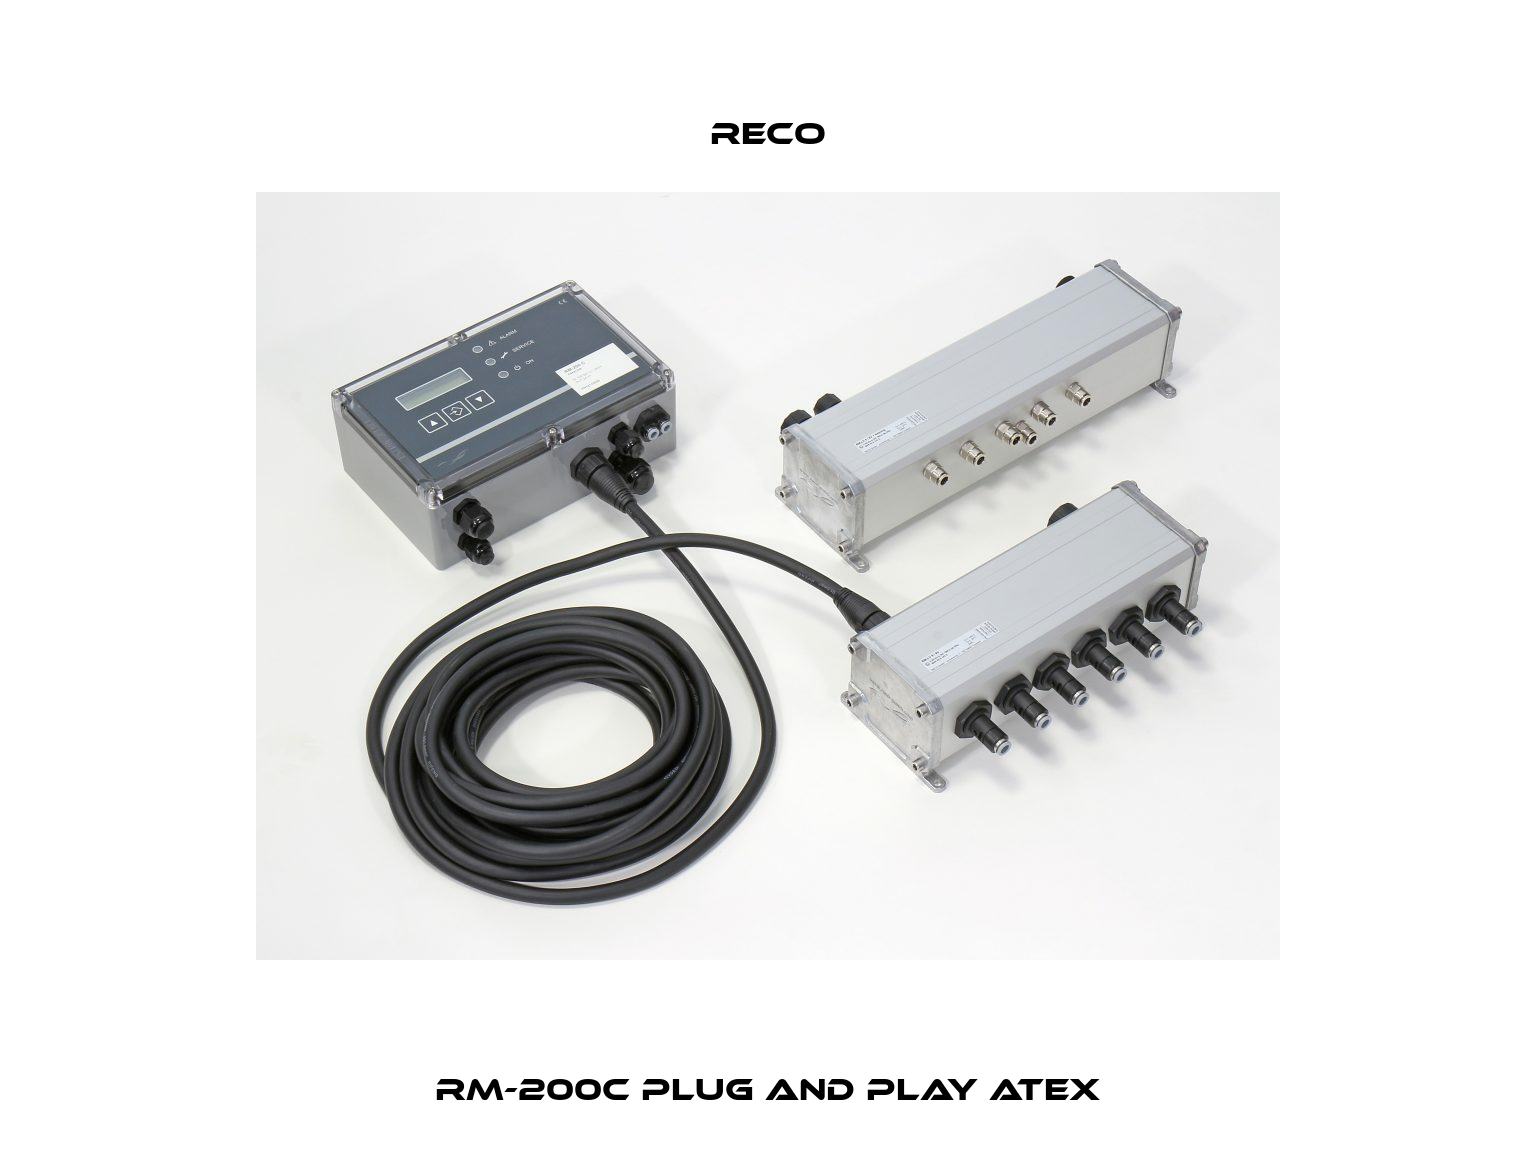 RM-200C Plug and Play ATEX Reco